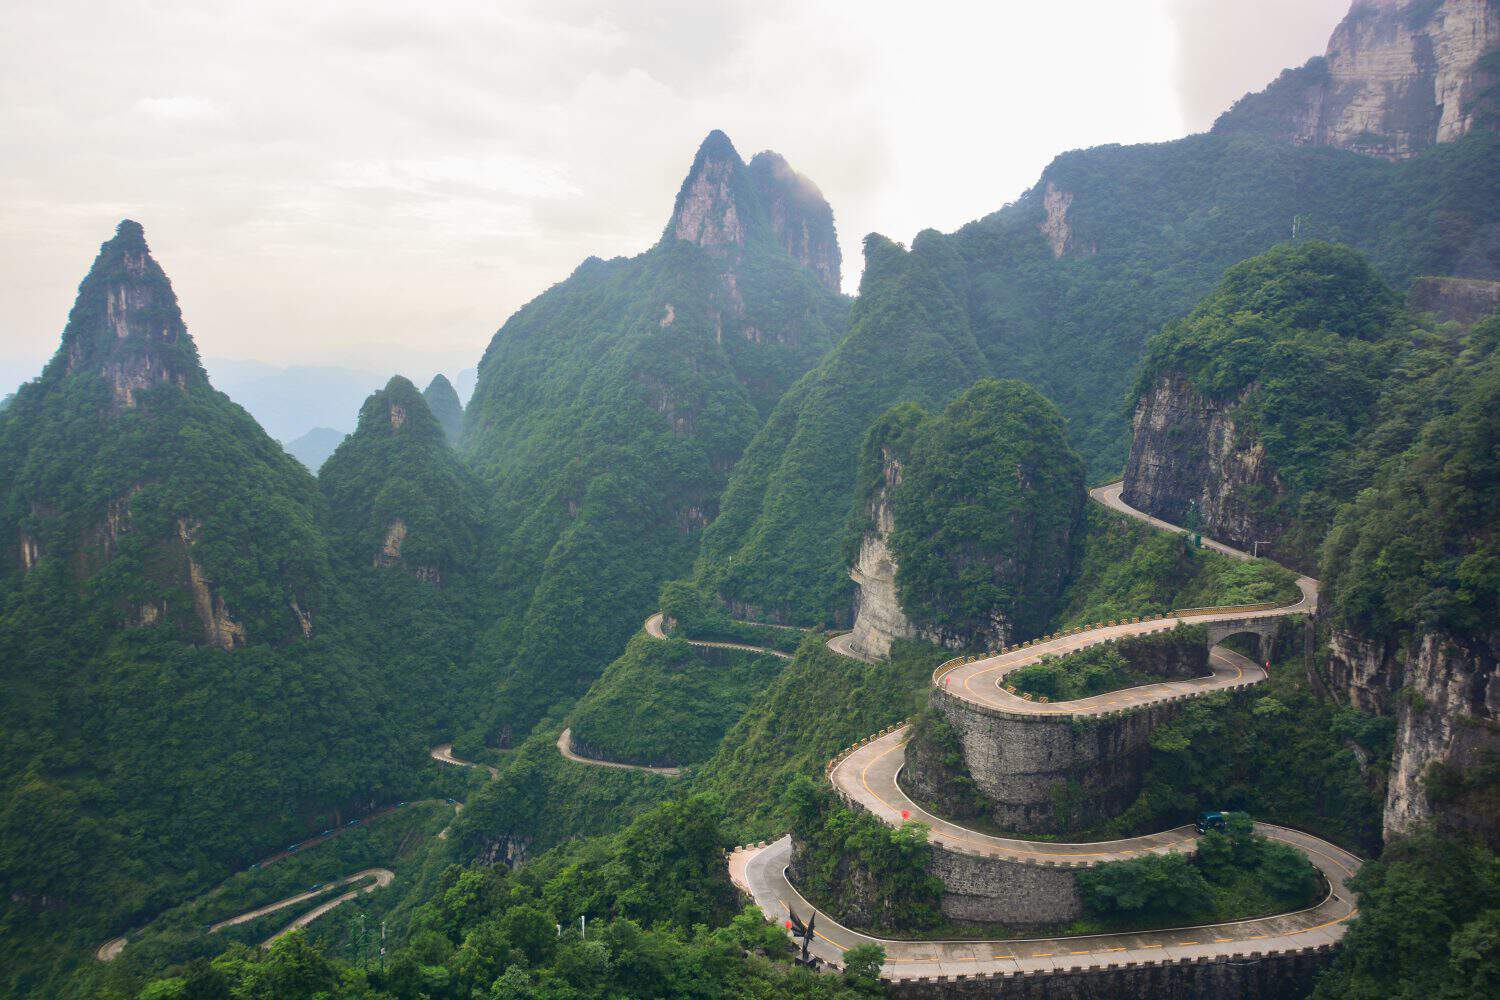 99 curve of Moutain,Beautiful Mountain in China,The winding road of Tianmen mountain national park, Hunan province,zhangjiajie The Heaven Gate of Tianmen Shan,mountain in china